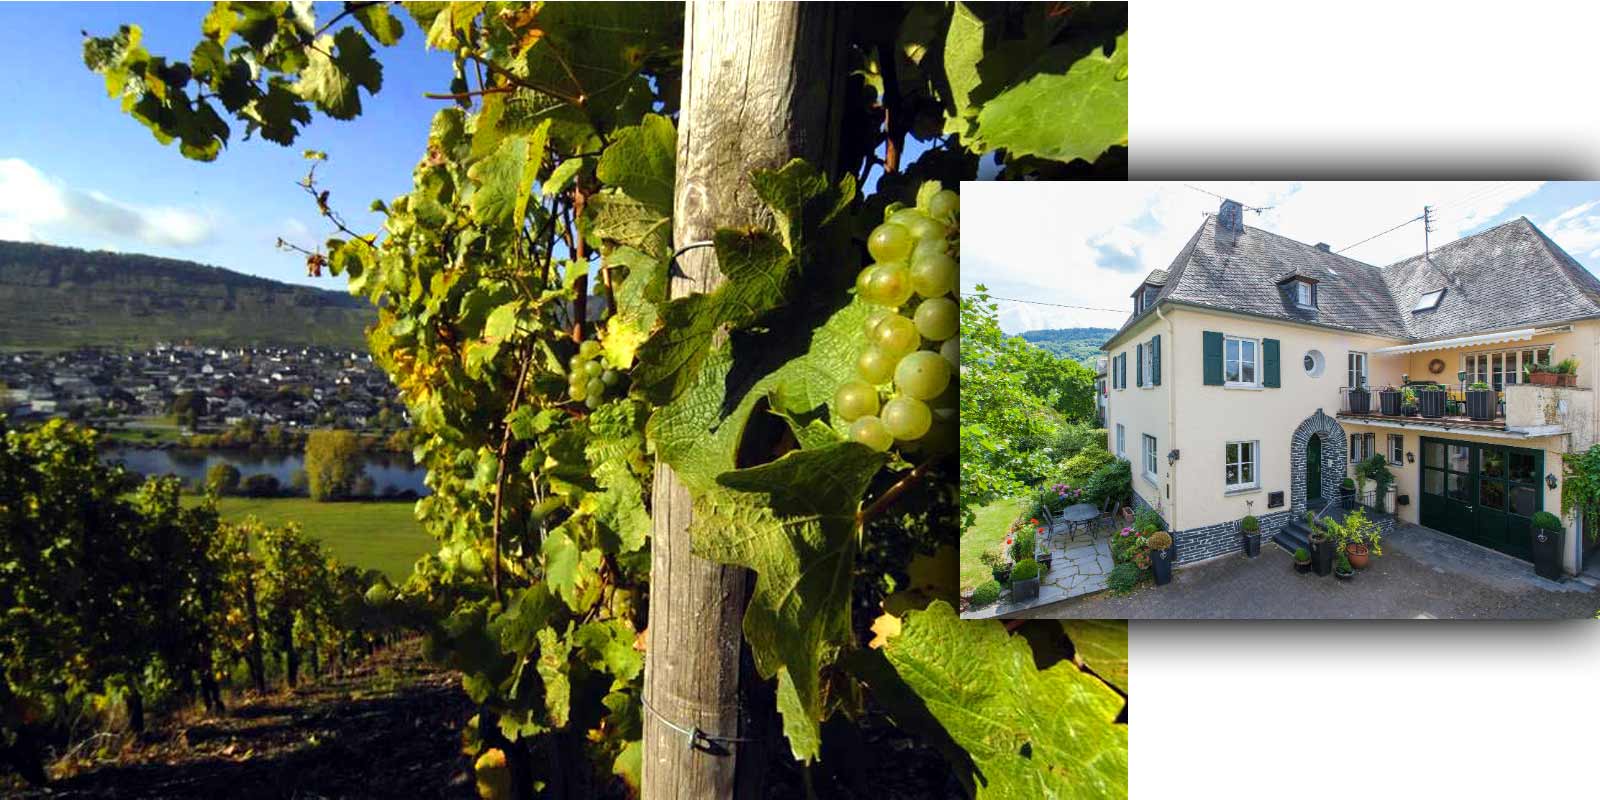 Pabrik anggur Grans-Fassian - Wilayah penghasil anggur Moselle Gerhard Grans mengambil alih bisnis penanaman anggur dari ayahnya Matthias pada tahun 1982 dan memperluas lahan kebun anggur seluas 4 hektar menjadi 9,5 hektar saat ini. 88% di antaranya ditanami Riesling, 10% Pinot Blanc, dan 2% Pinot Gris. Lokasi kilang anggur terbaik juga merupakan lokasi yang diklasifikasikan - lokasi tersebut diklasifikasikan dalam kategori budidaya tertinggi.